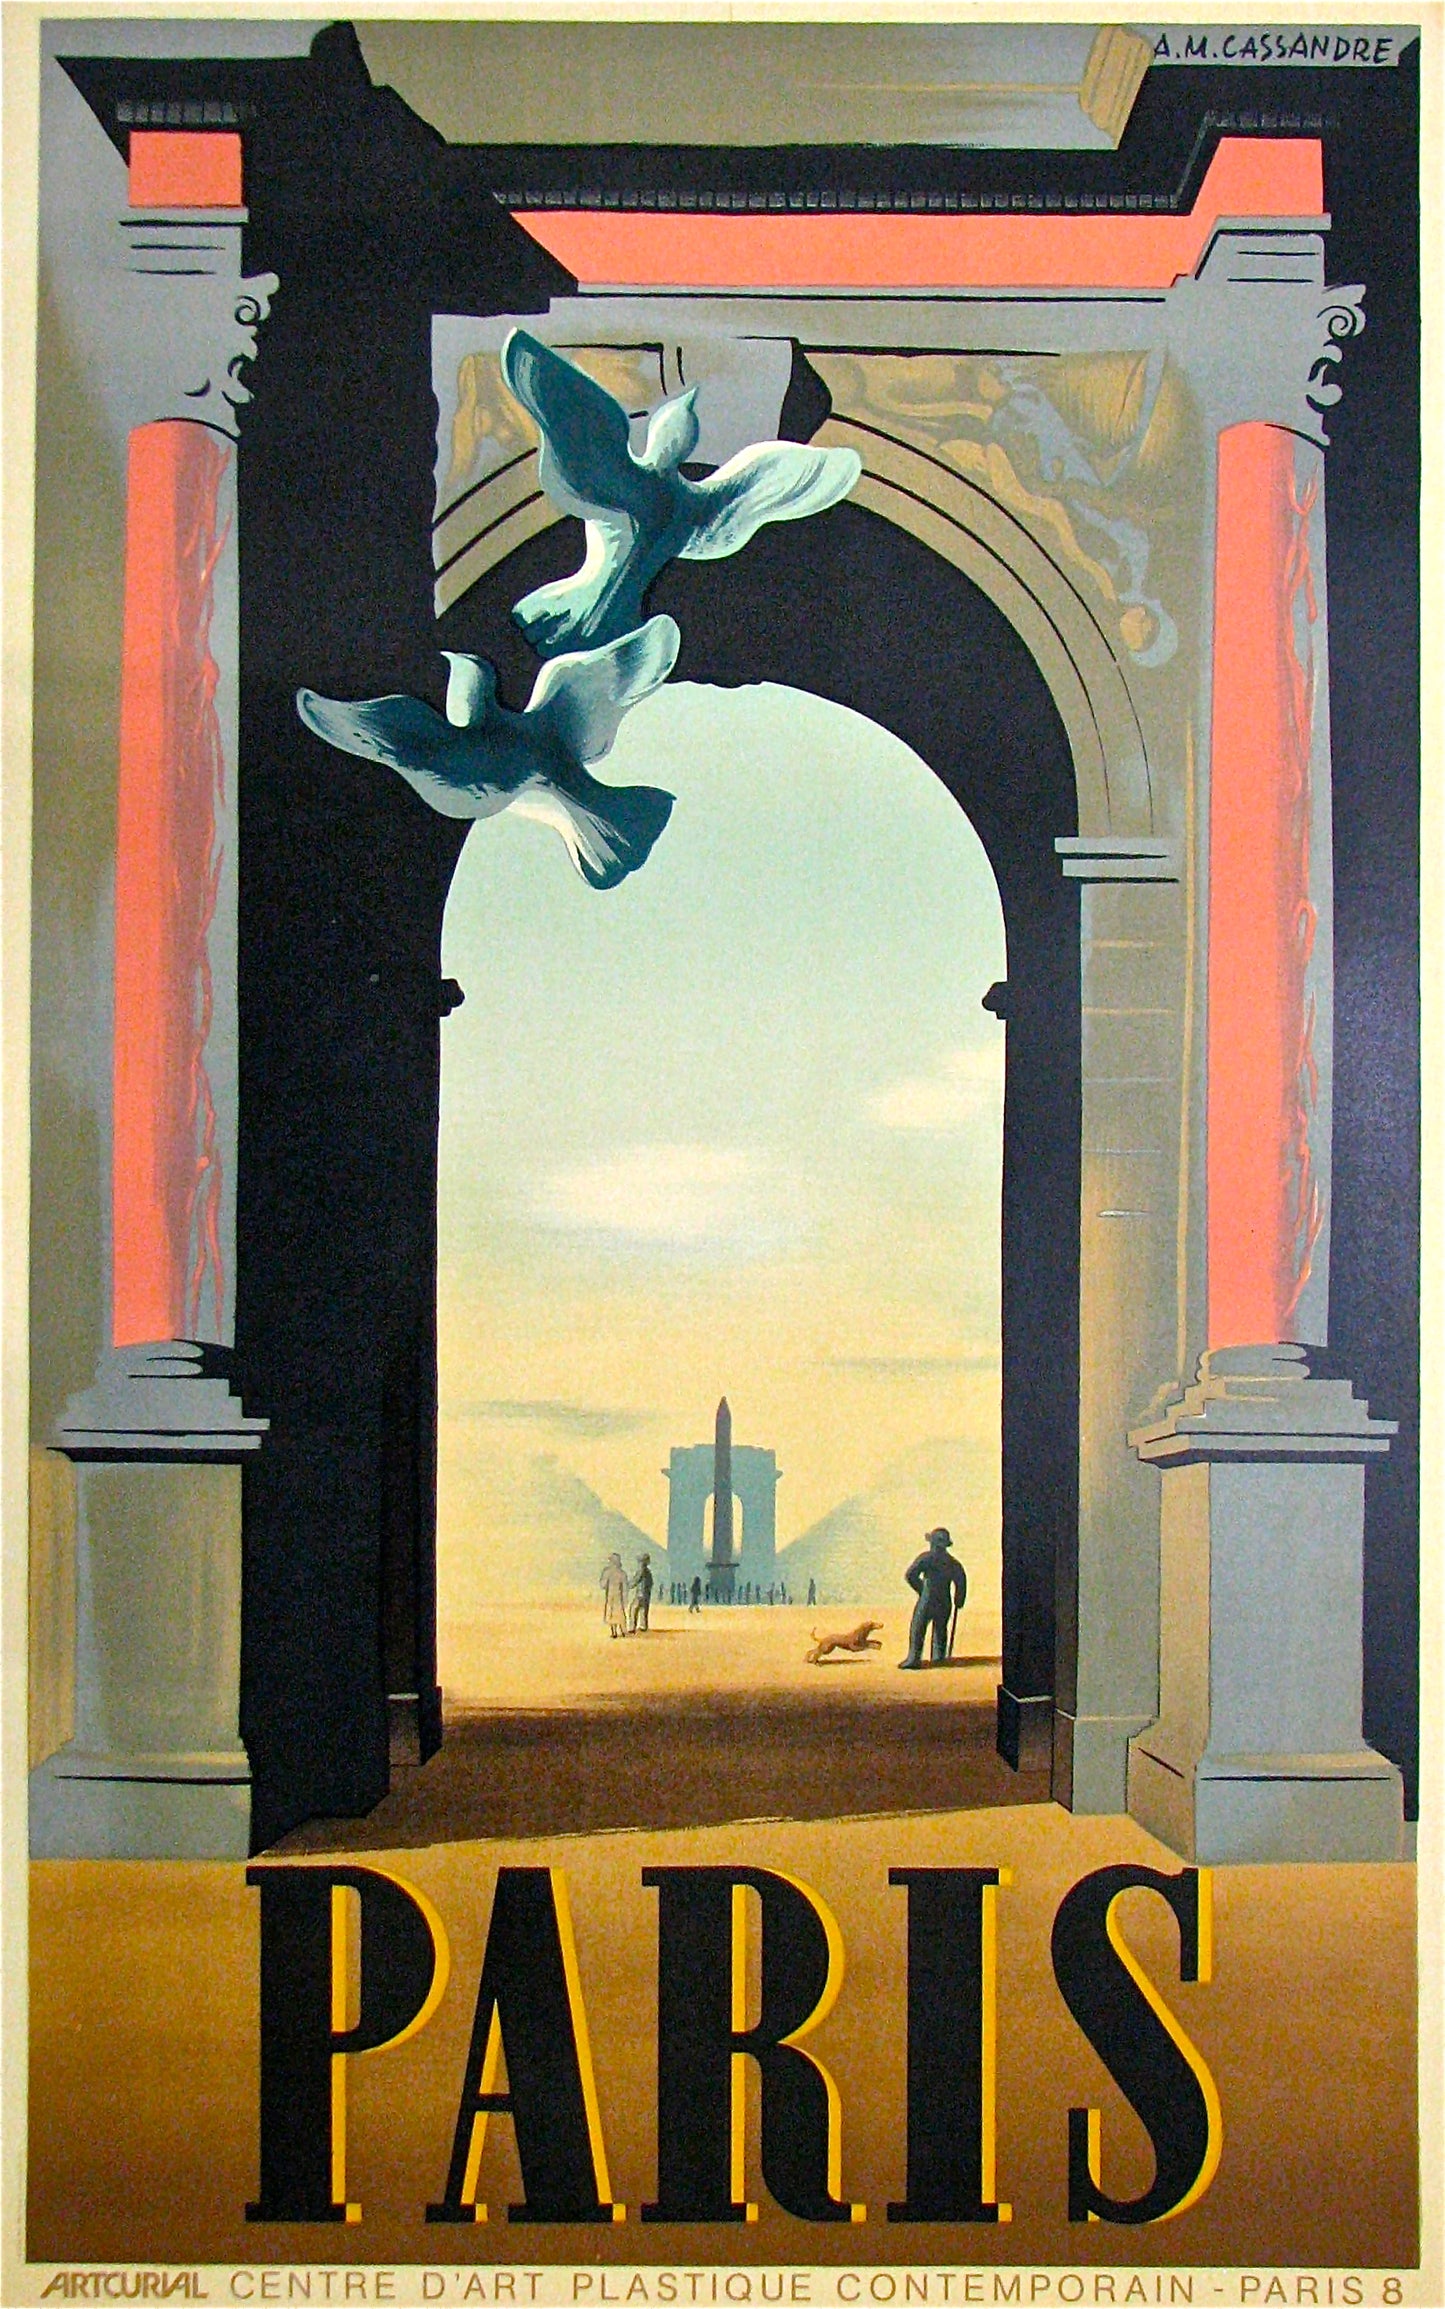 Paris (after) Adolphe Cassandre, 1984 - Mourlot Editions - Fine_Art - Poster - Lithograph - Wall Art - Vintage - Prints - Original